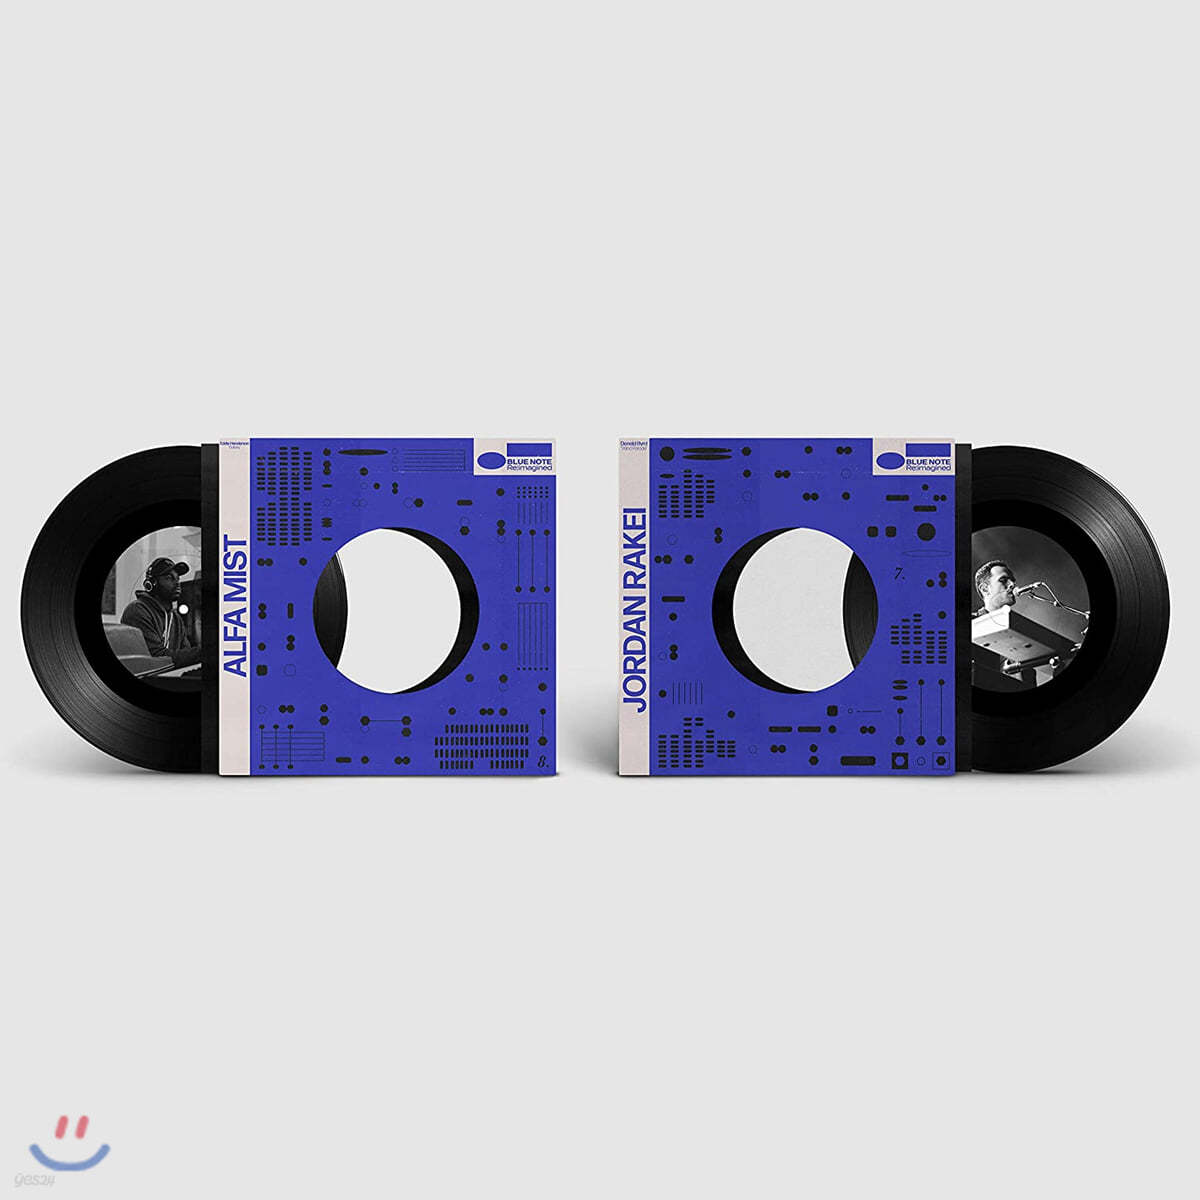 Jordan Rakei / Alfa Mist (조던 라케이 / 알파 미스트) - Wind Parade / Galaxy [7인치 싱글 Vinyl] 